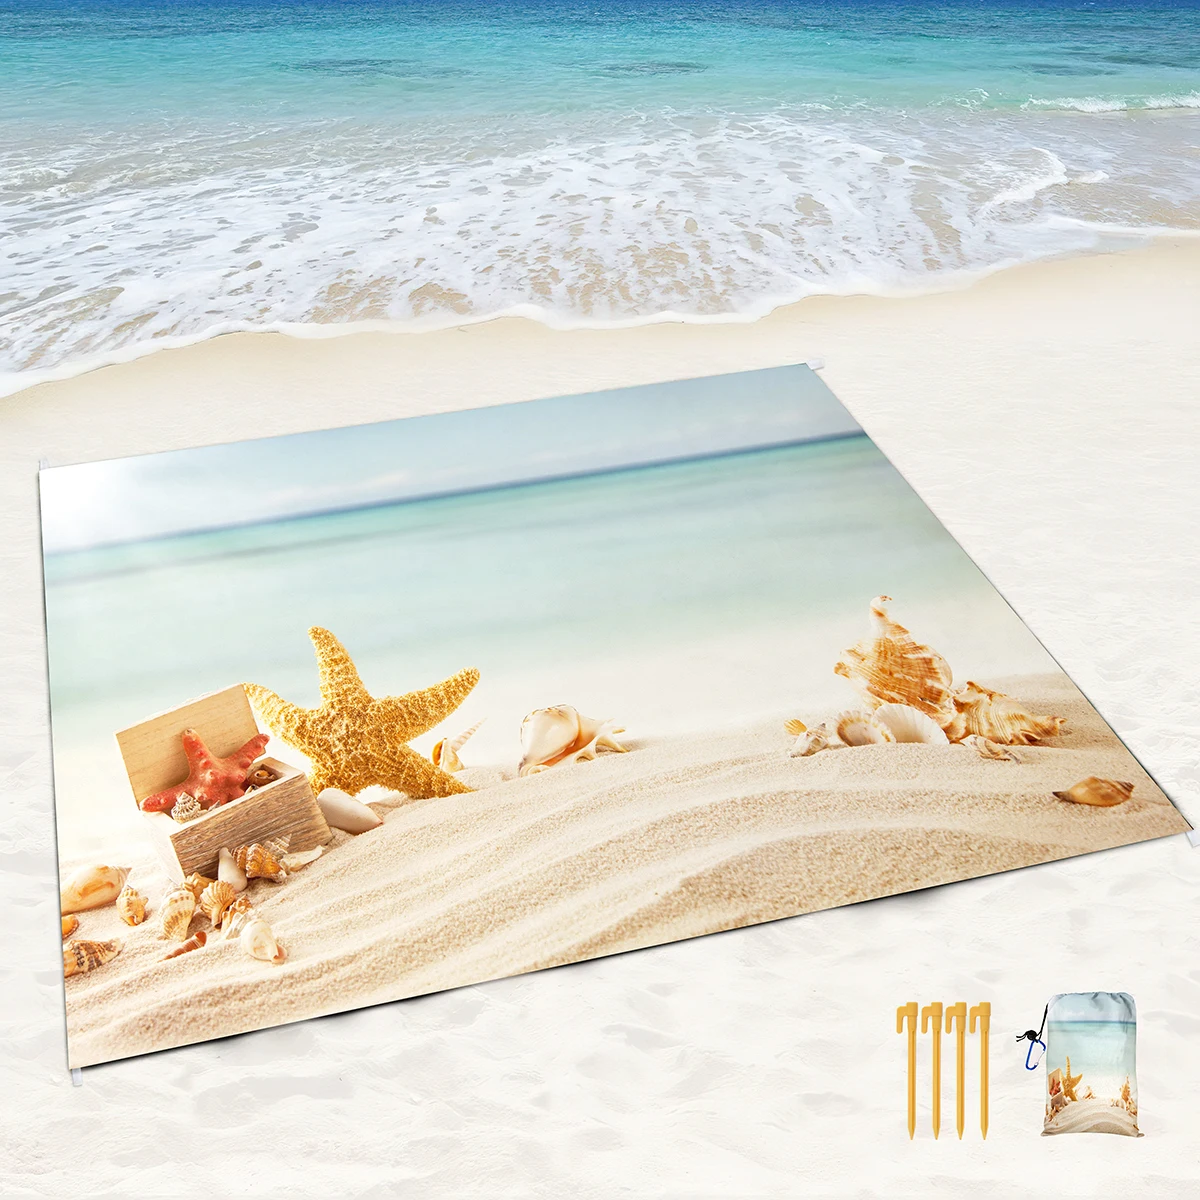 Plaj Kabuk Denizyıldızı Kum Geçirmez plaj battaniyesi Kum Geçirmez Mat Köşe Cepler ve Örgü Çanta Plaj Partisi için, Seyahat, Kamp